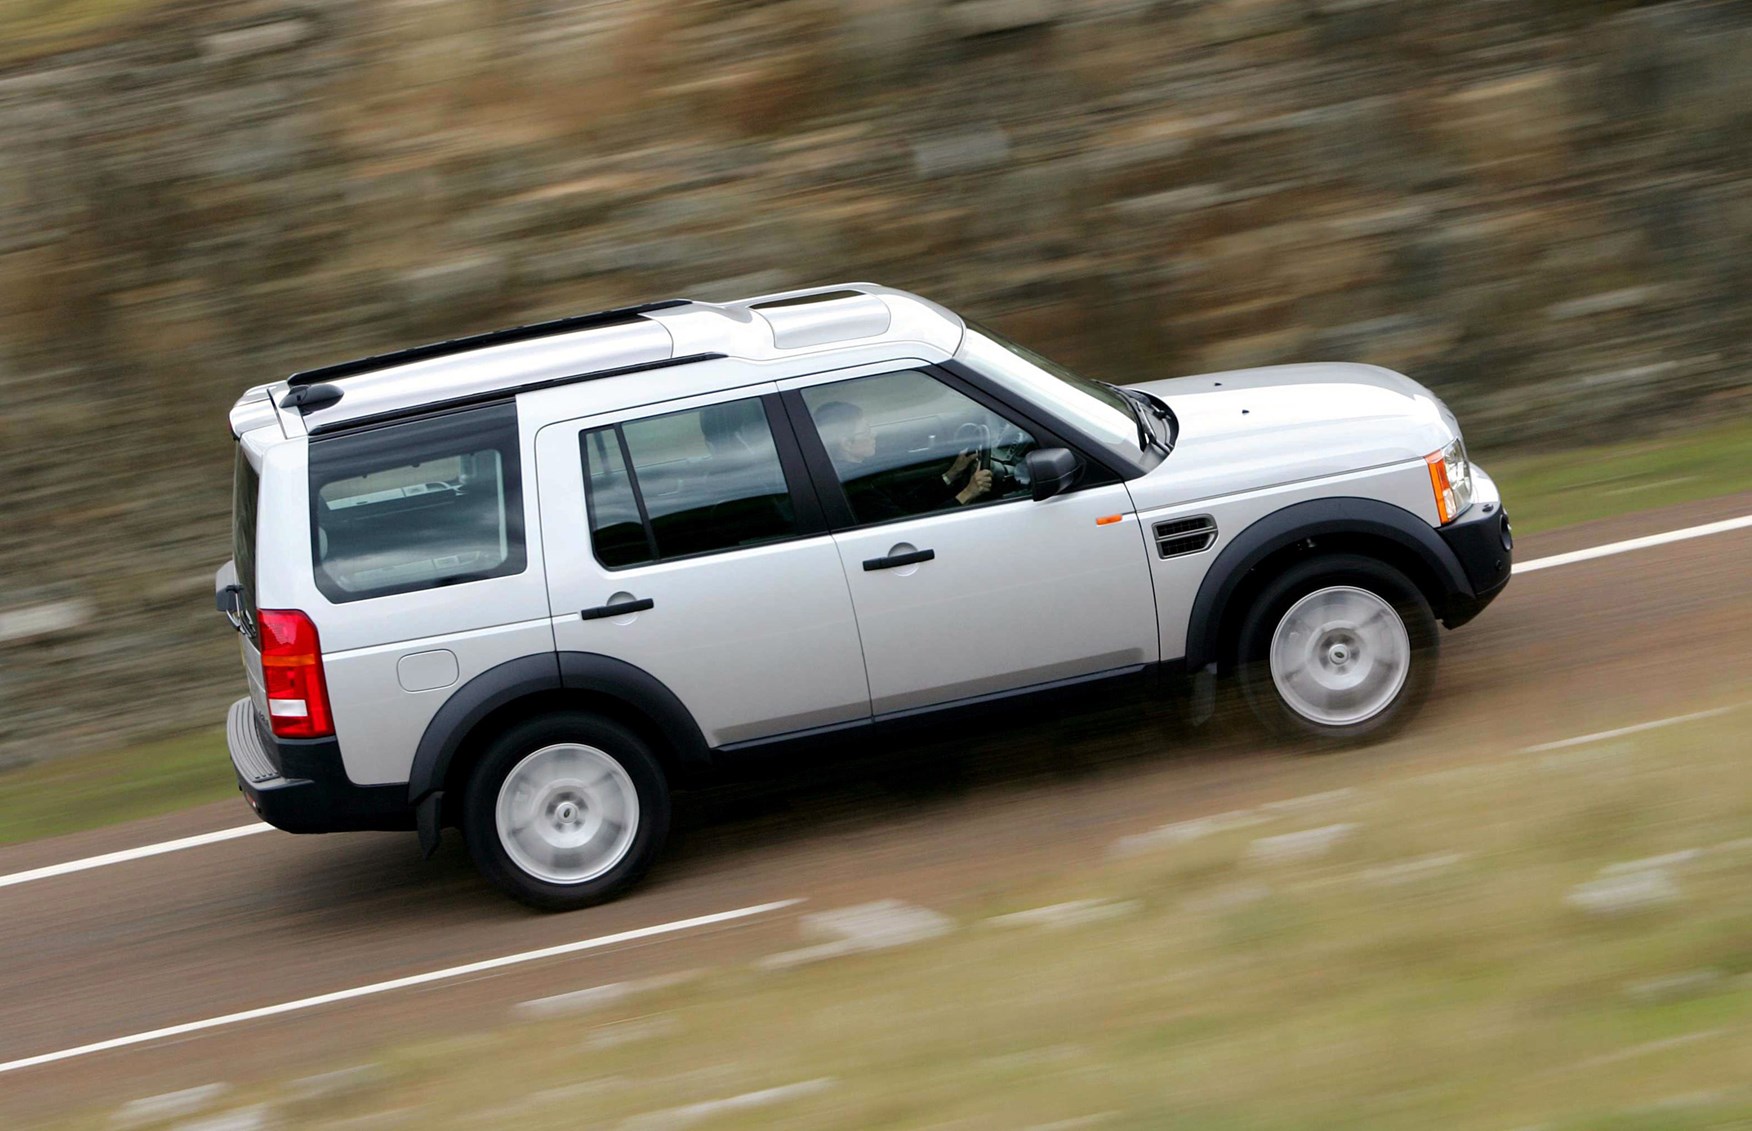 Балу дискавери. Land Rover Discovery 3. Ленд Ровер Дискавери 4. Land Rover Discovery 3 g4. Land Rover lr3/Discovery 3 (GCAT) 2005-2009.